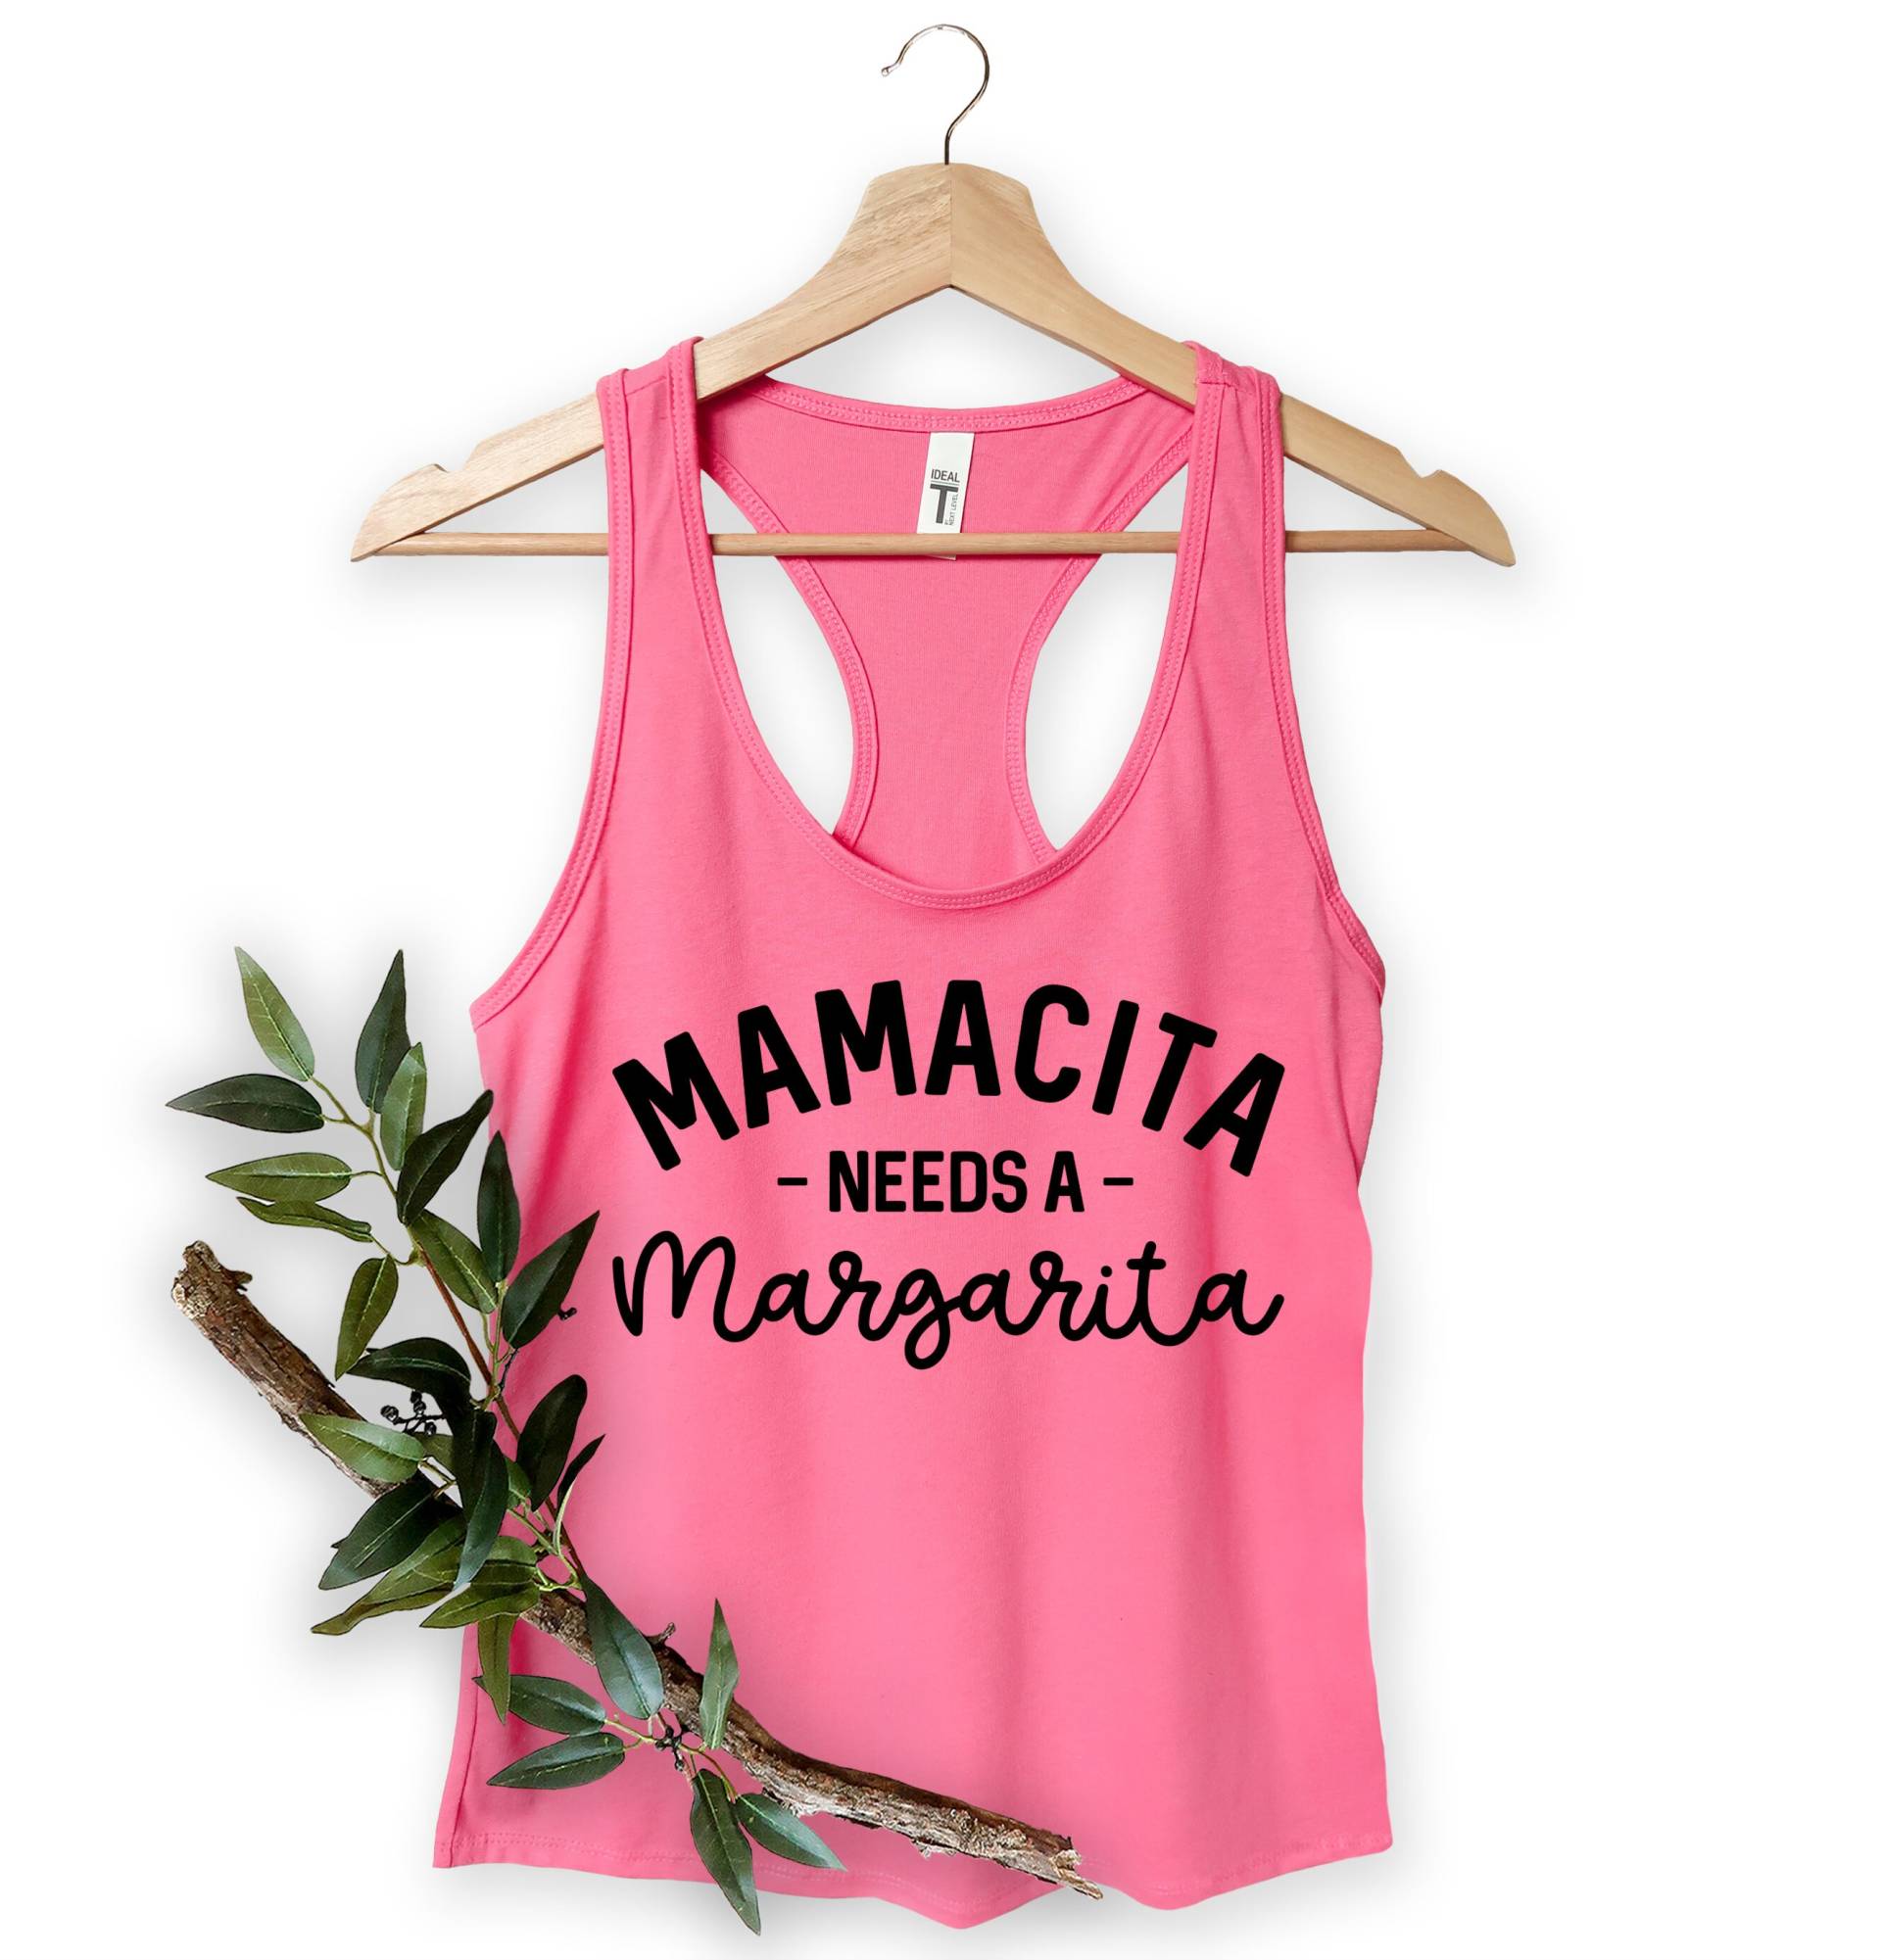 Mamacita Braucht Ein Margarita Tank Top, Frauen V-Ausschnitt Shirts, Geschenk Für Mama, Mutter Geschenke, Mama Sommer Weihnachtsgeschenke von MoonLightByEllen